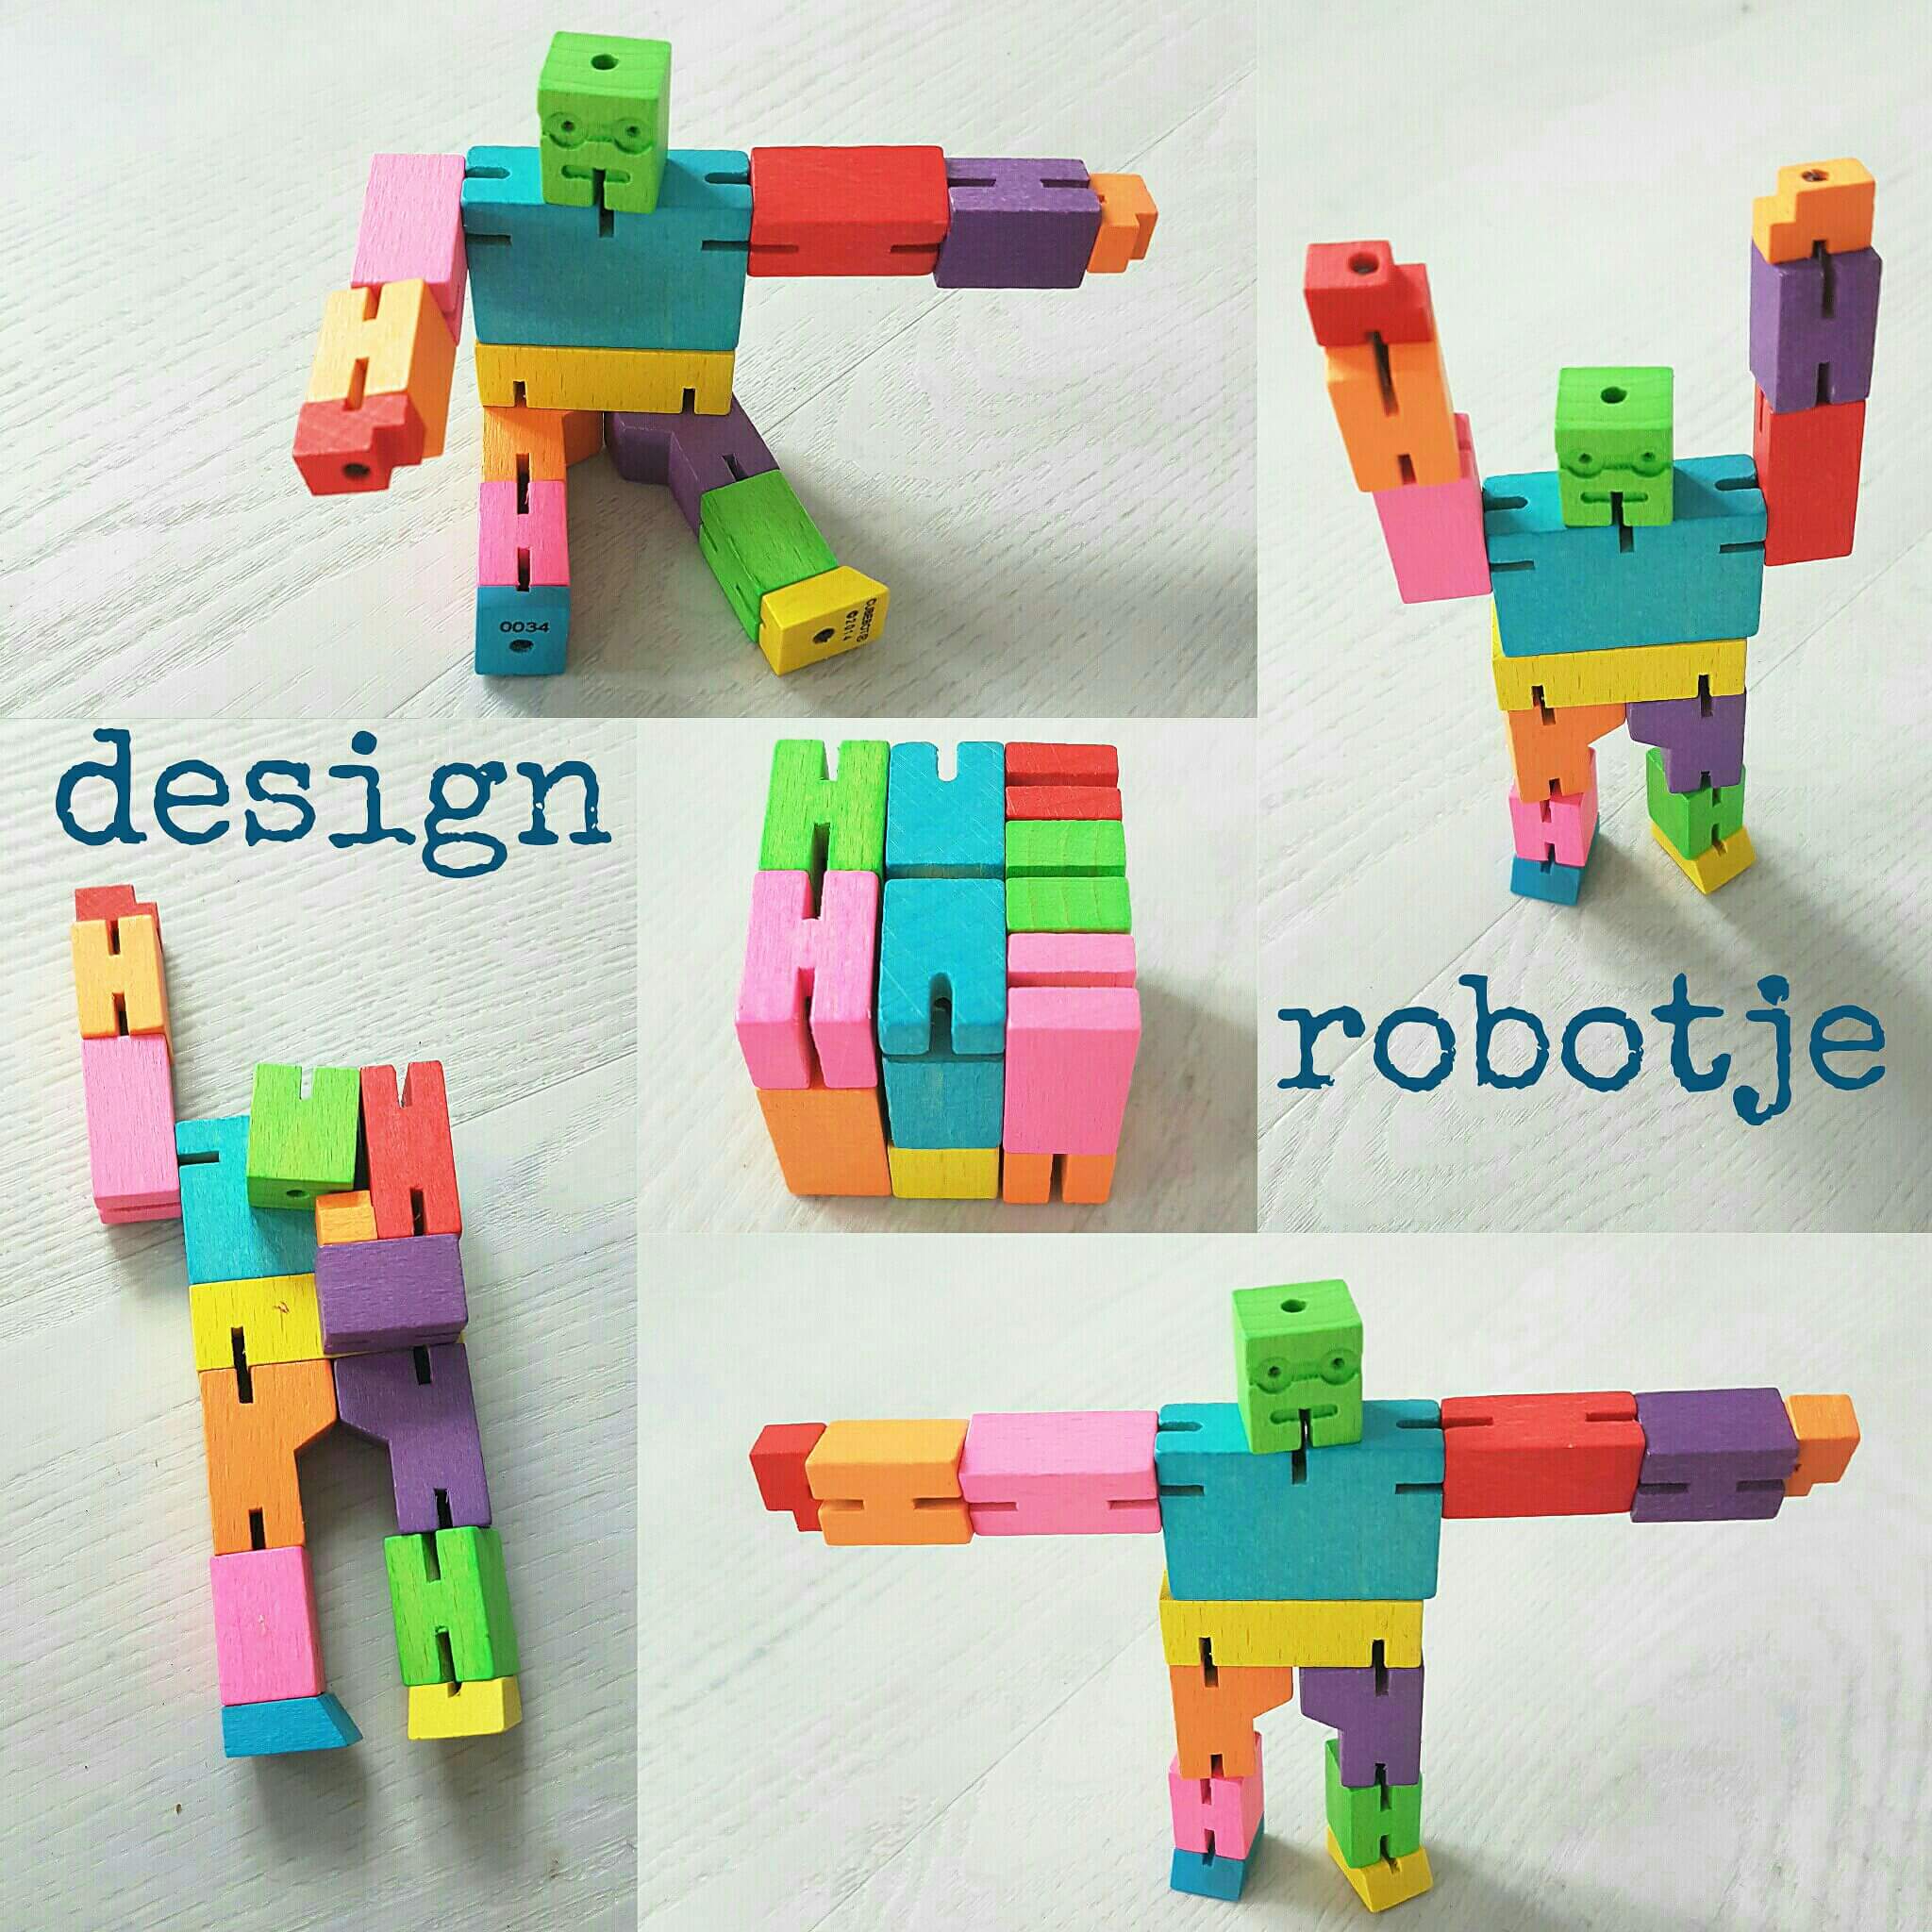 Design robotje om eindeloos mee te spelen én naar te kijken - Areaware Cubebot